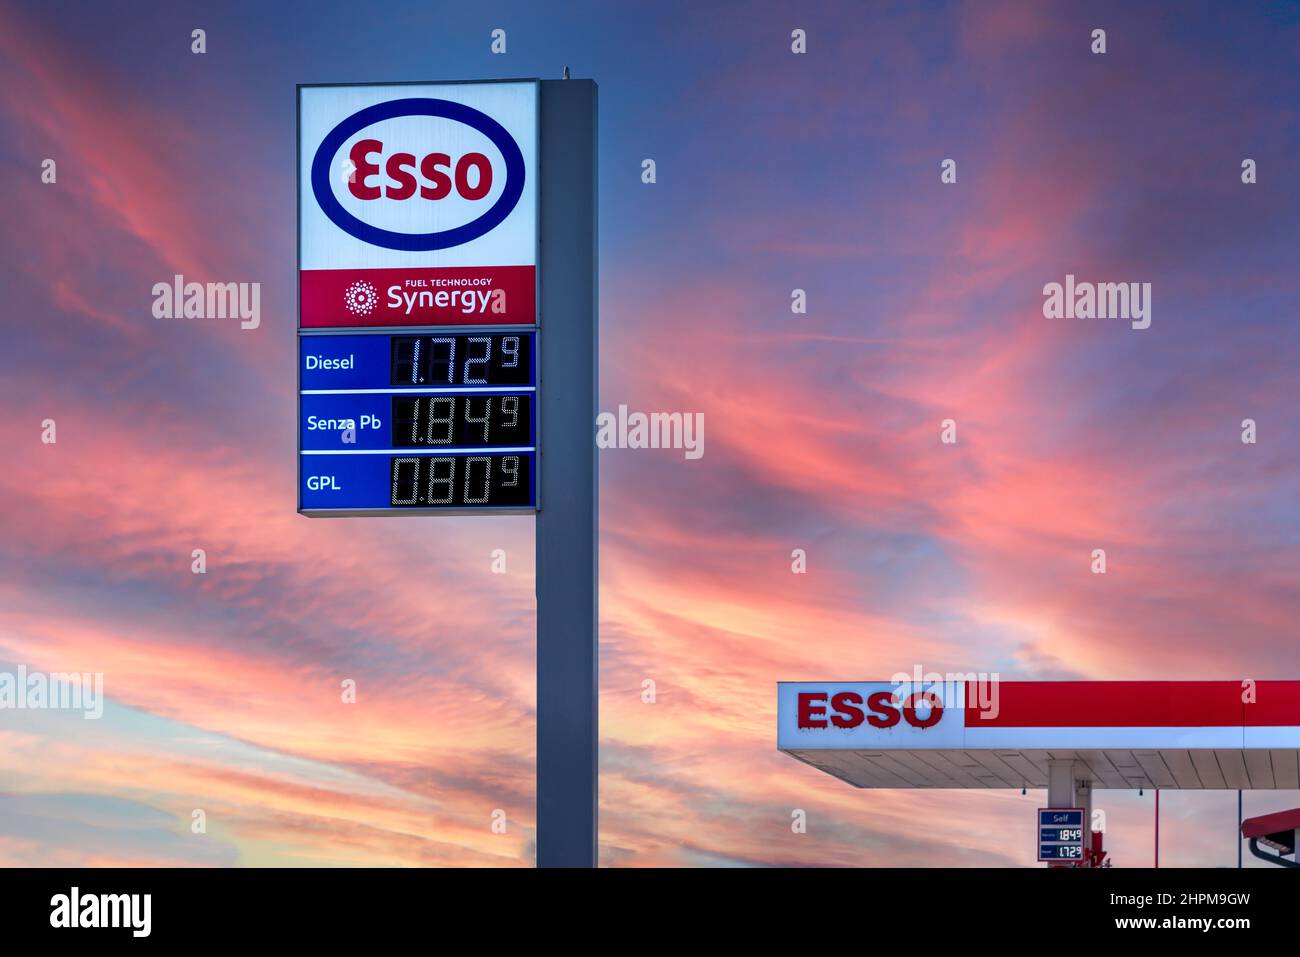 Fossano, Italien - 22. Februar 2022: Esso-Logo mit Kraftstoff-Euro-Preisanzeige am farbigen Sonnenuntergangshimmel, Esso ist eine Marke der globalen Erdölindustrie gi Stockfoto